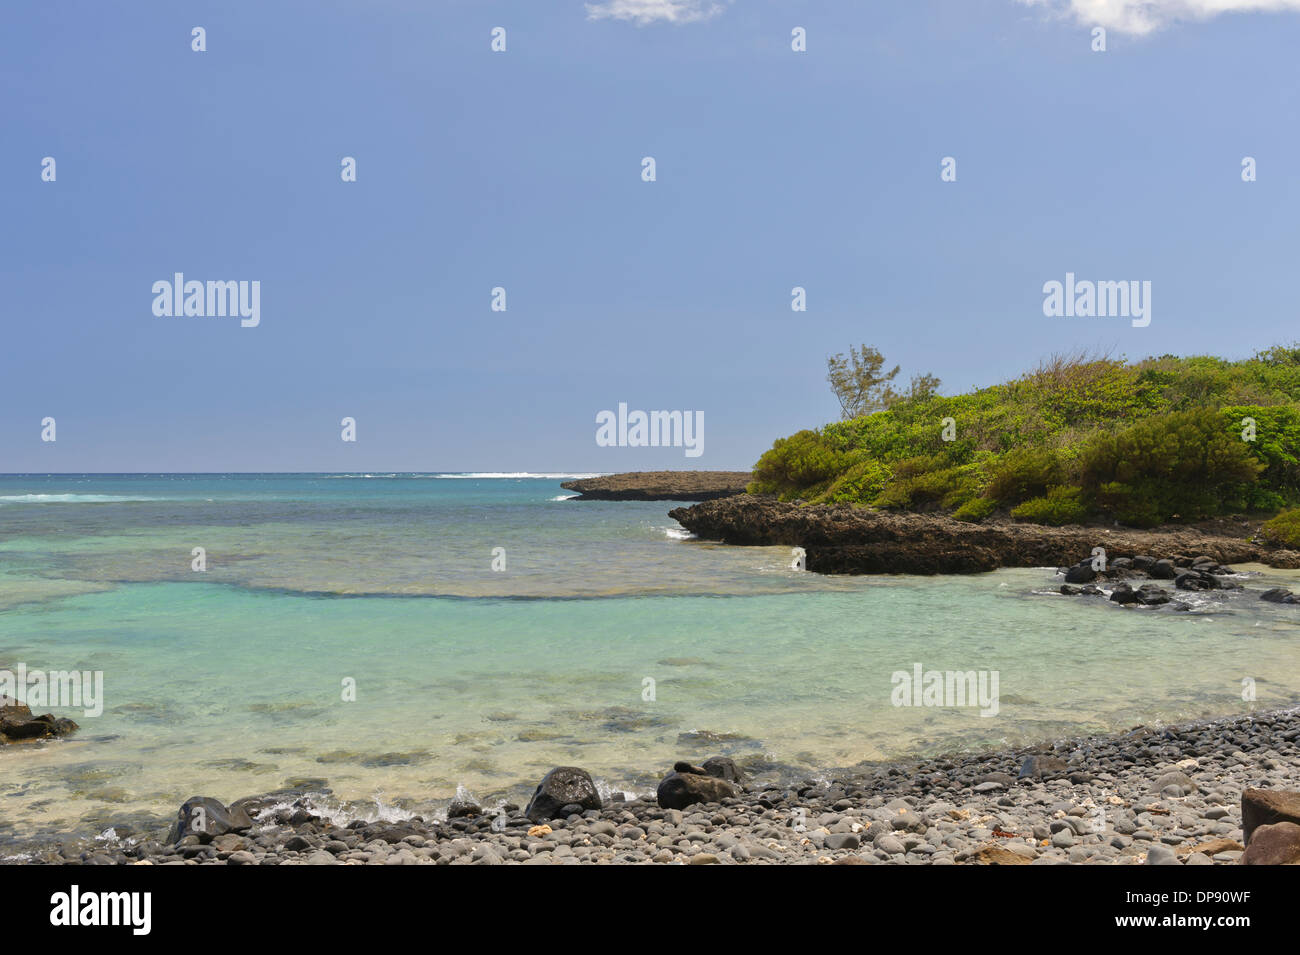 Pebbles aller Baugrößen decken den Strand von Iles ilot Sancho, einer kleinen unbewohnten Insel in der Savanne district, Mauritius. Stockfoto